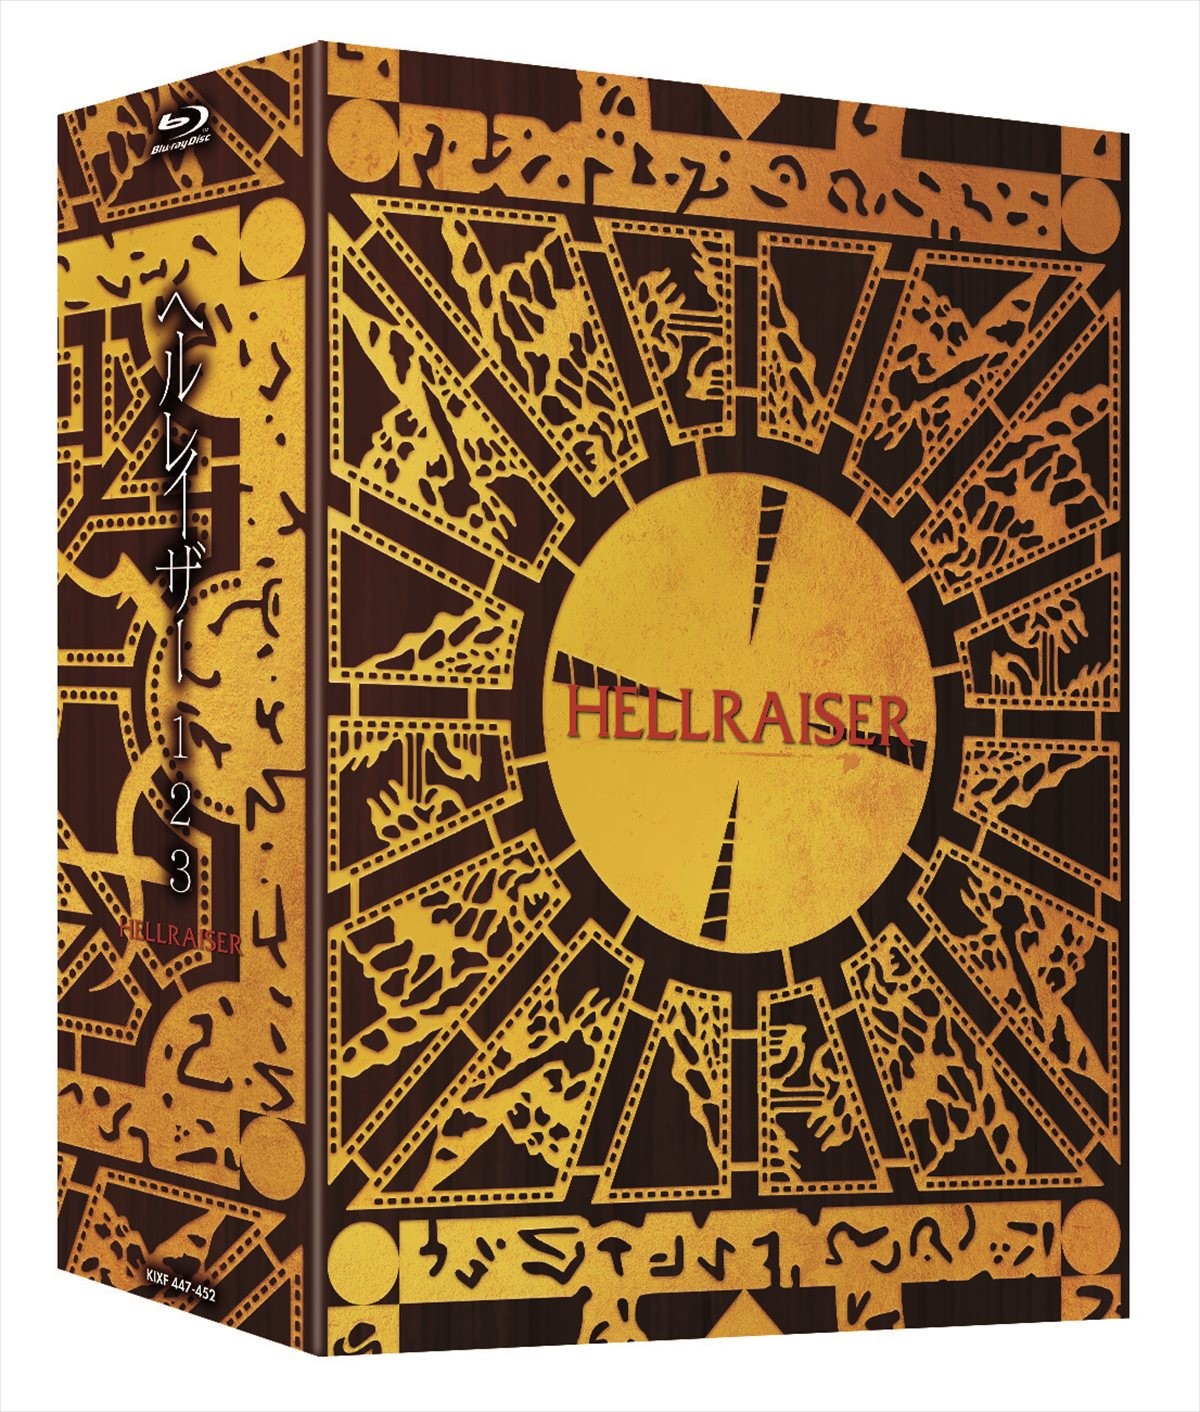 『ヘルレイザー』、超豪華6枚組BD BOX発売決定！ 本編削除シーンが特典映像に収録